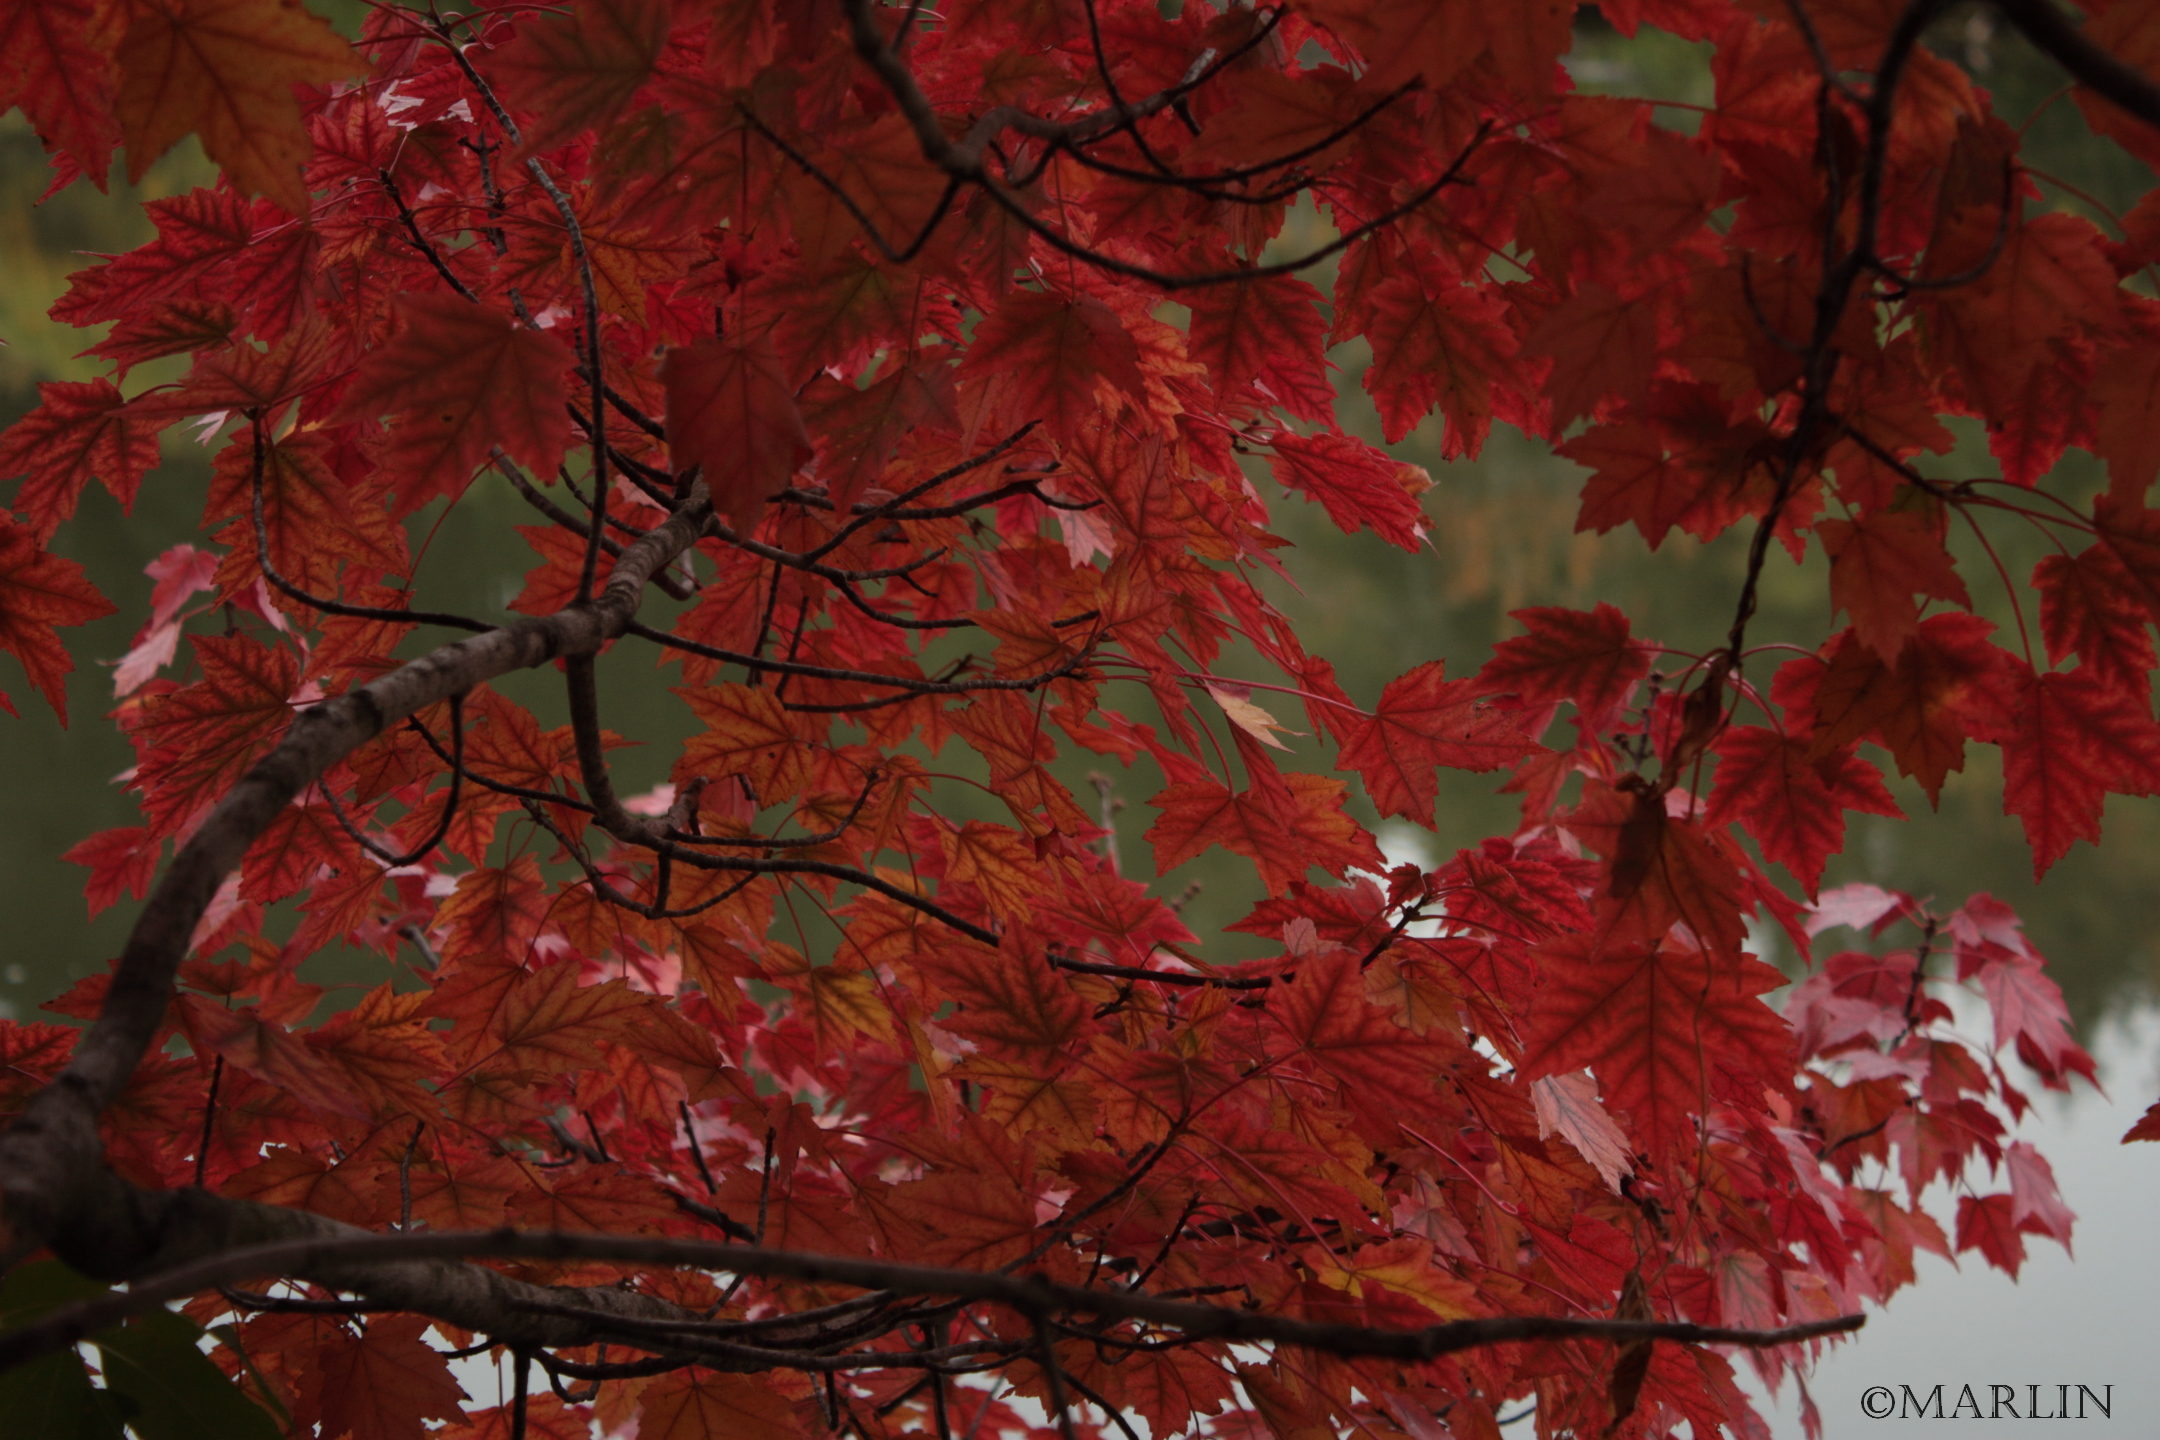 Autumn flame maple foliage